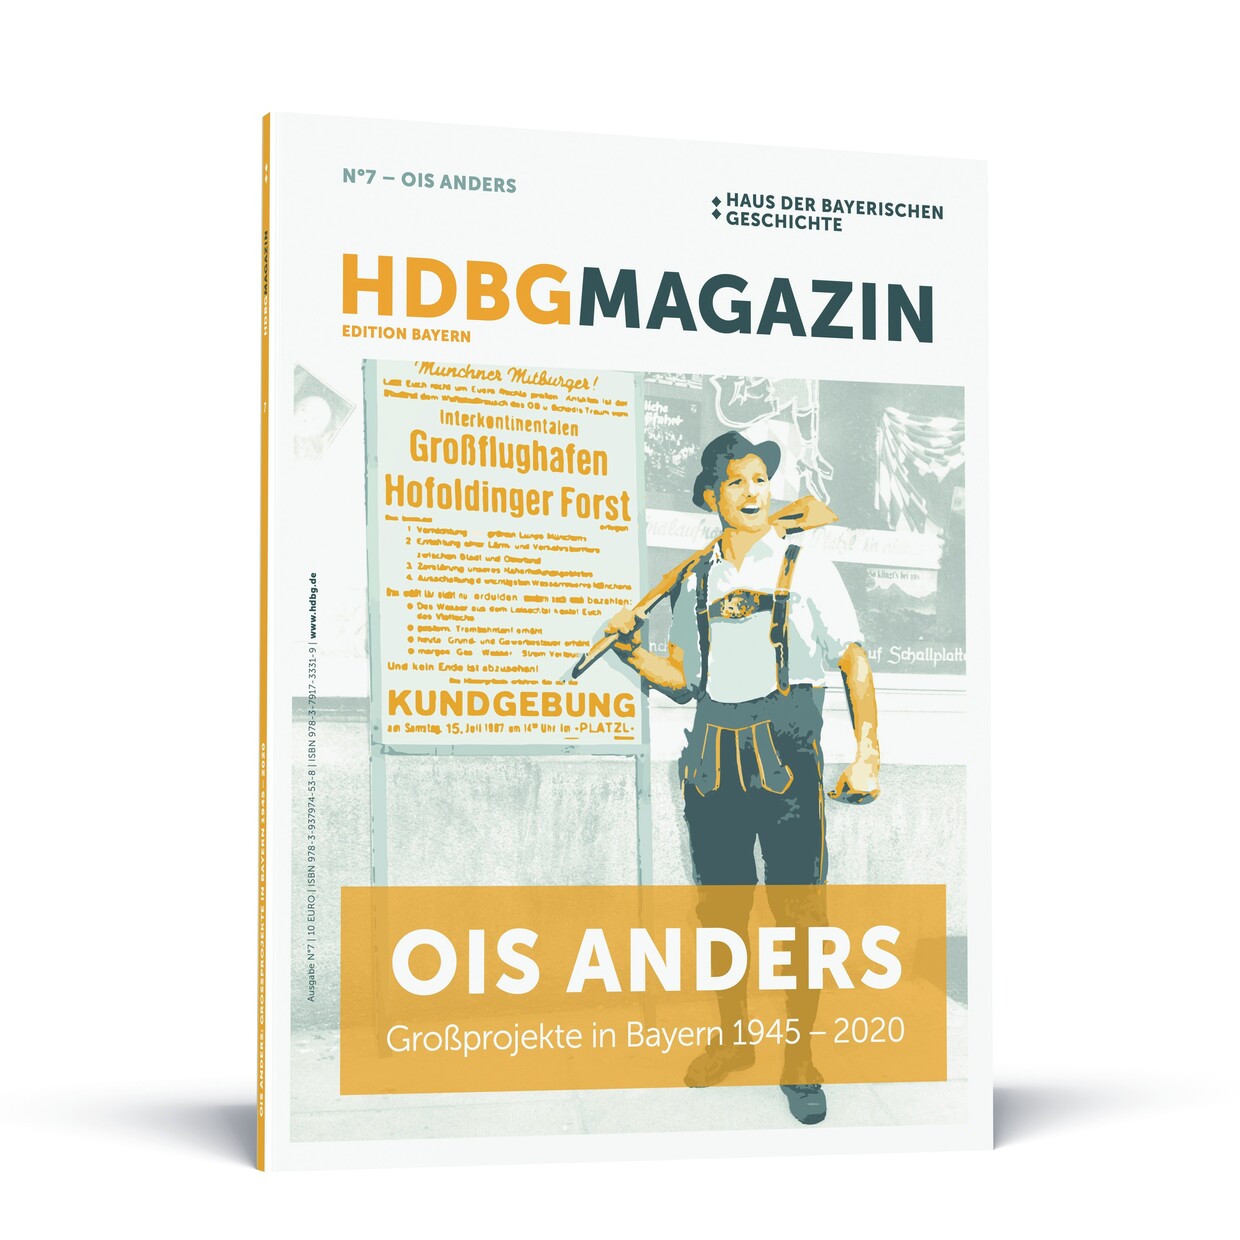 HDBG Magazin Nummer 7 „Ois anders: Großprojekte in Bayern 1945 – 2020“
© HdBG| Layout: FRIENDS – Menschen Marken Medien
